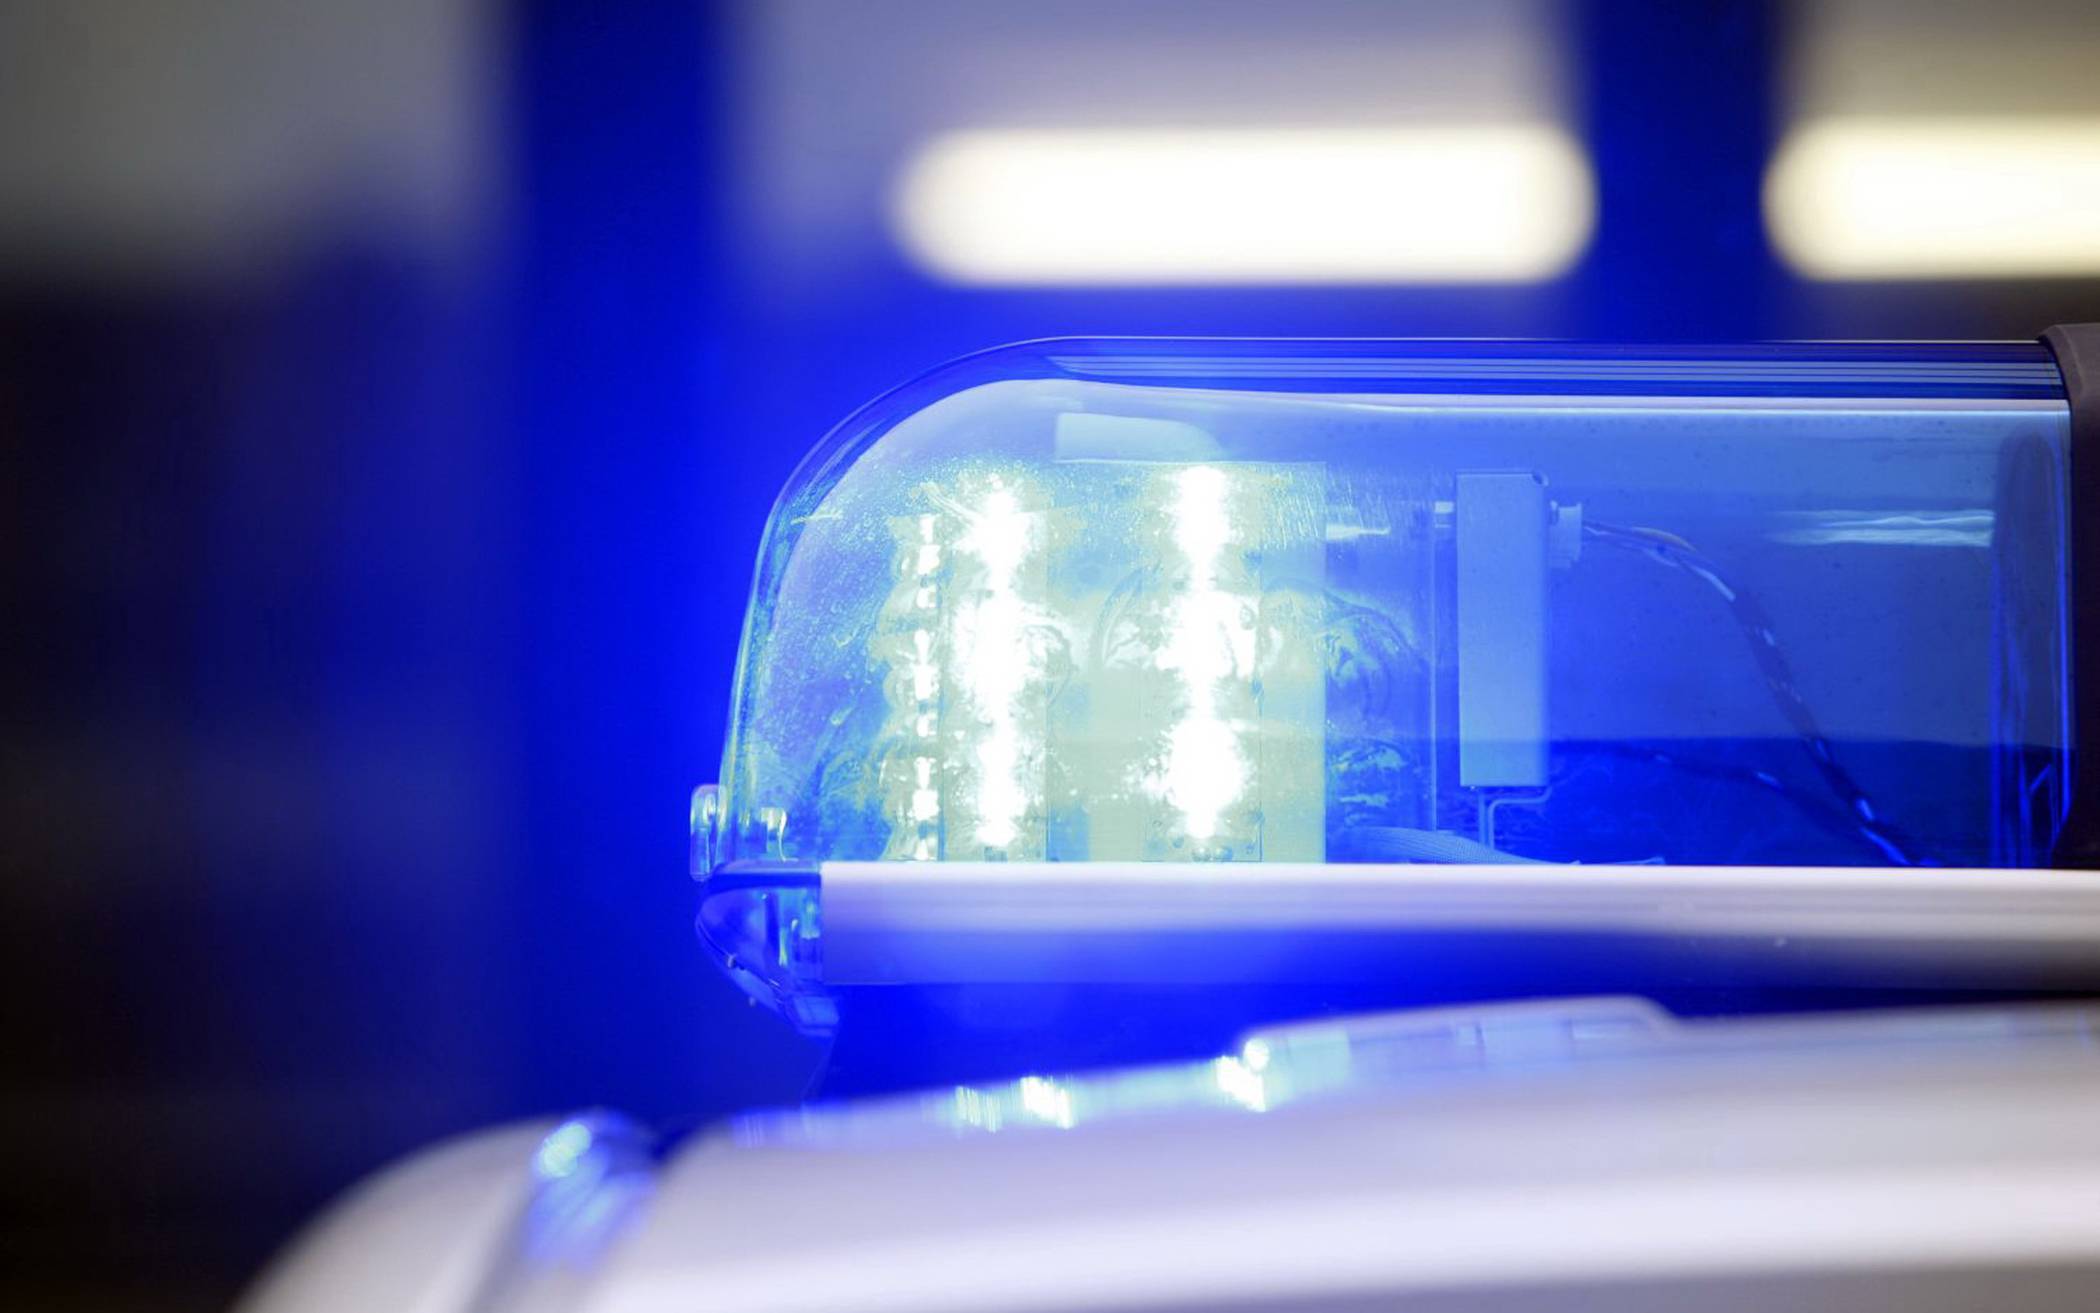 Gesuchte Mörderin offenbar in Wuppertal verhaftet